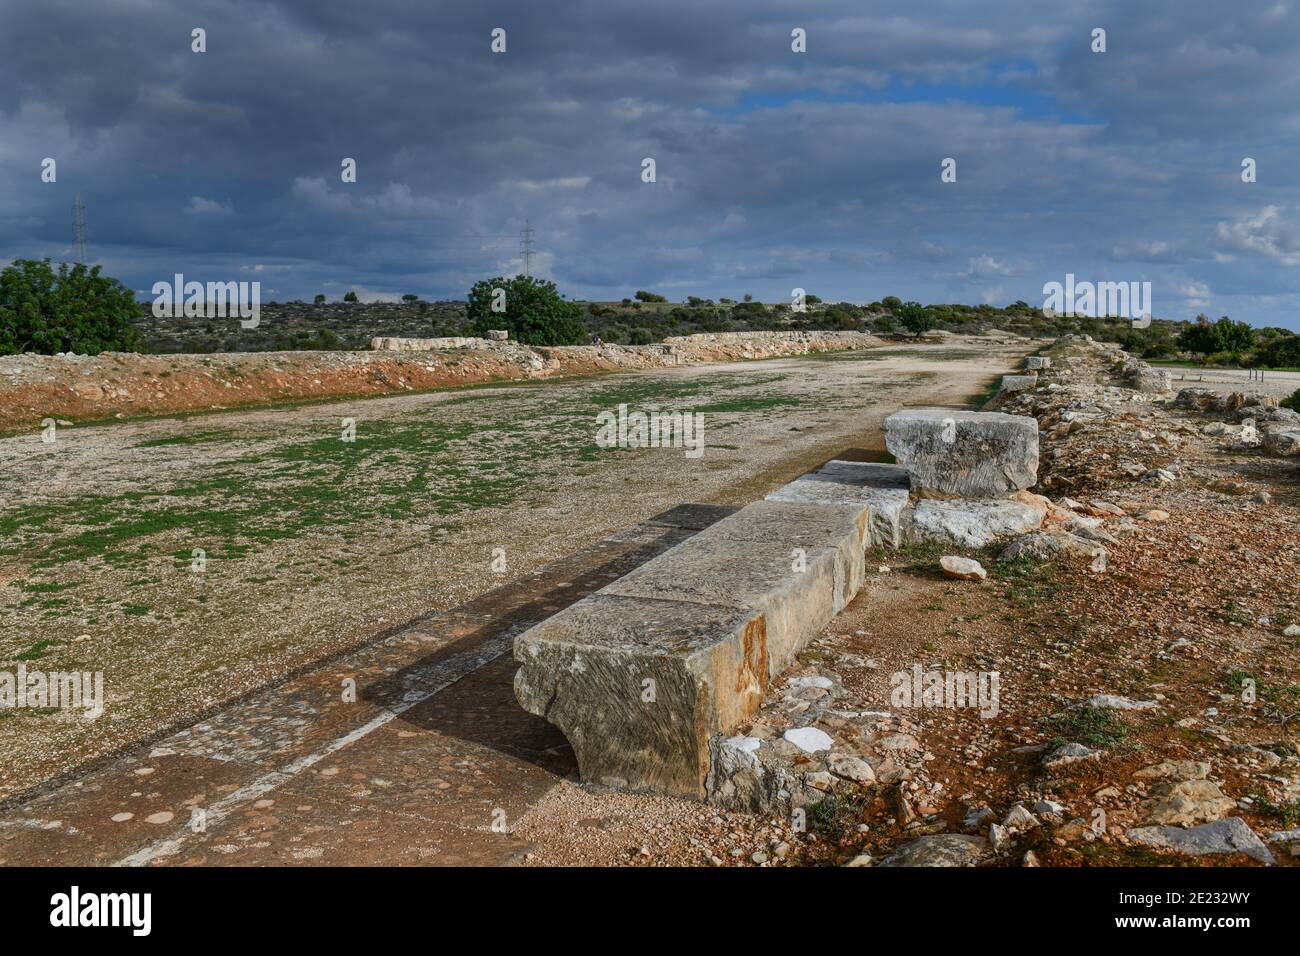 Stadion Rennbahn, Ausgrabungsstaette, Kourion, Zypern Foto Stock